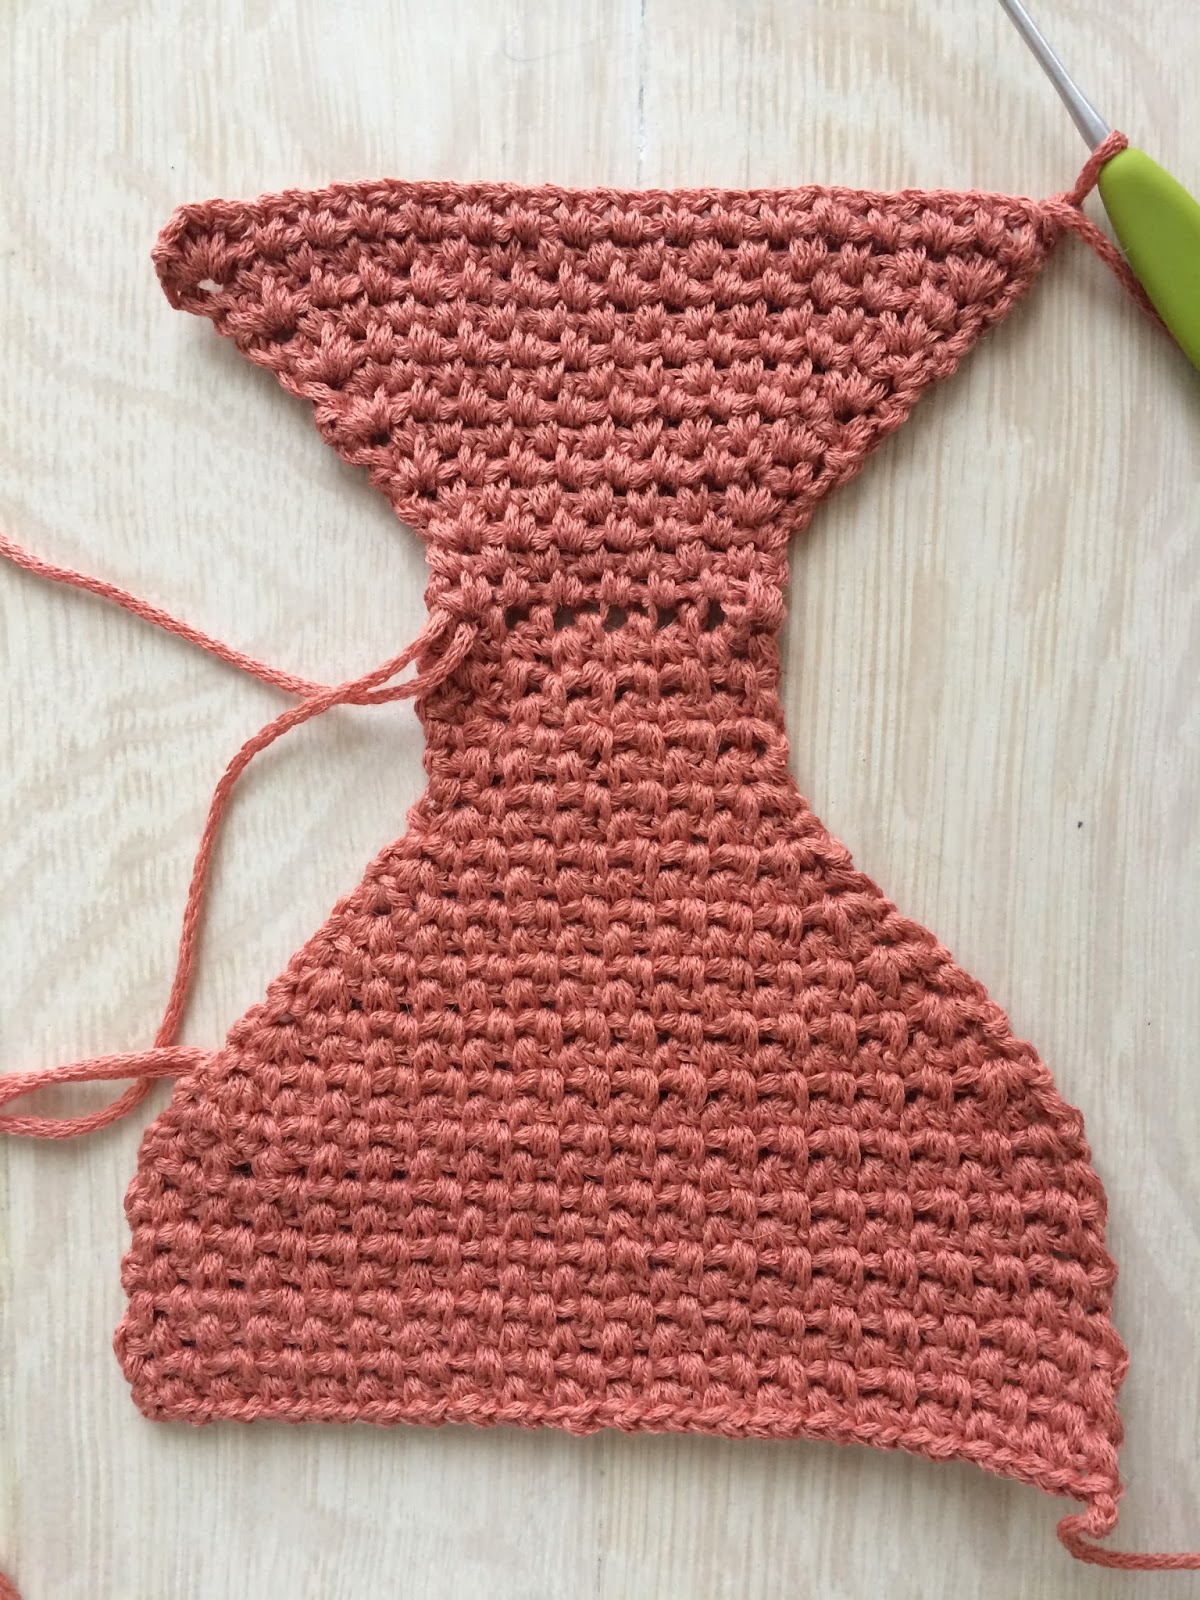 Crochet PATTERN - DK Yarn Crochet Diaper Cover Pattern – Posh Patterns